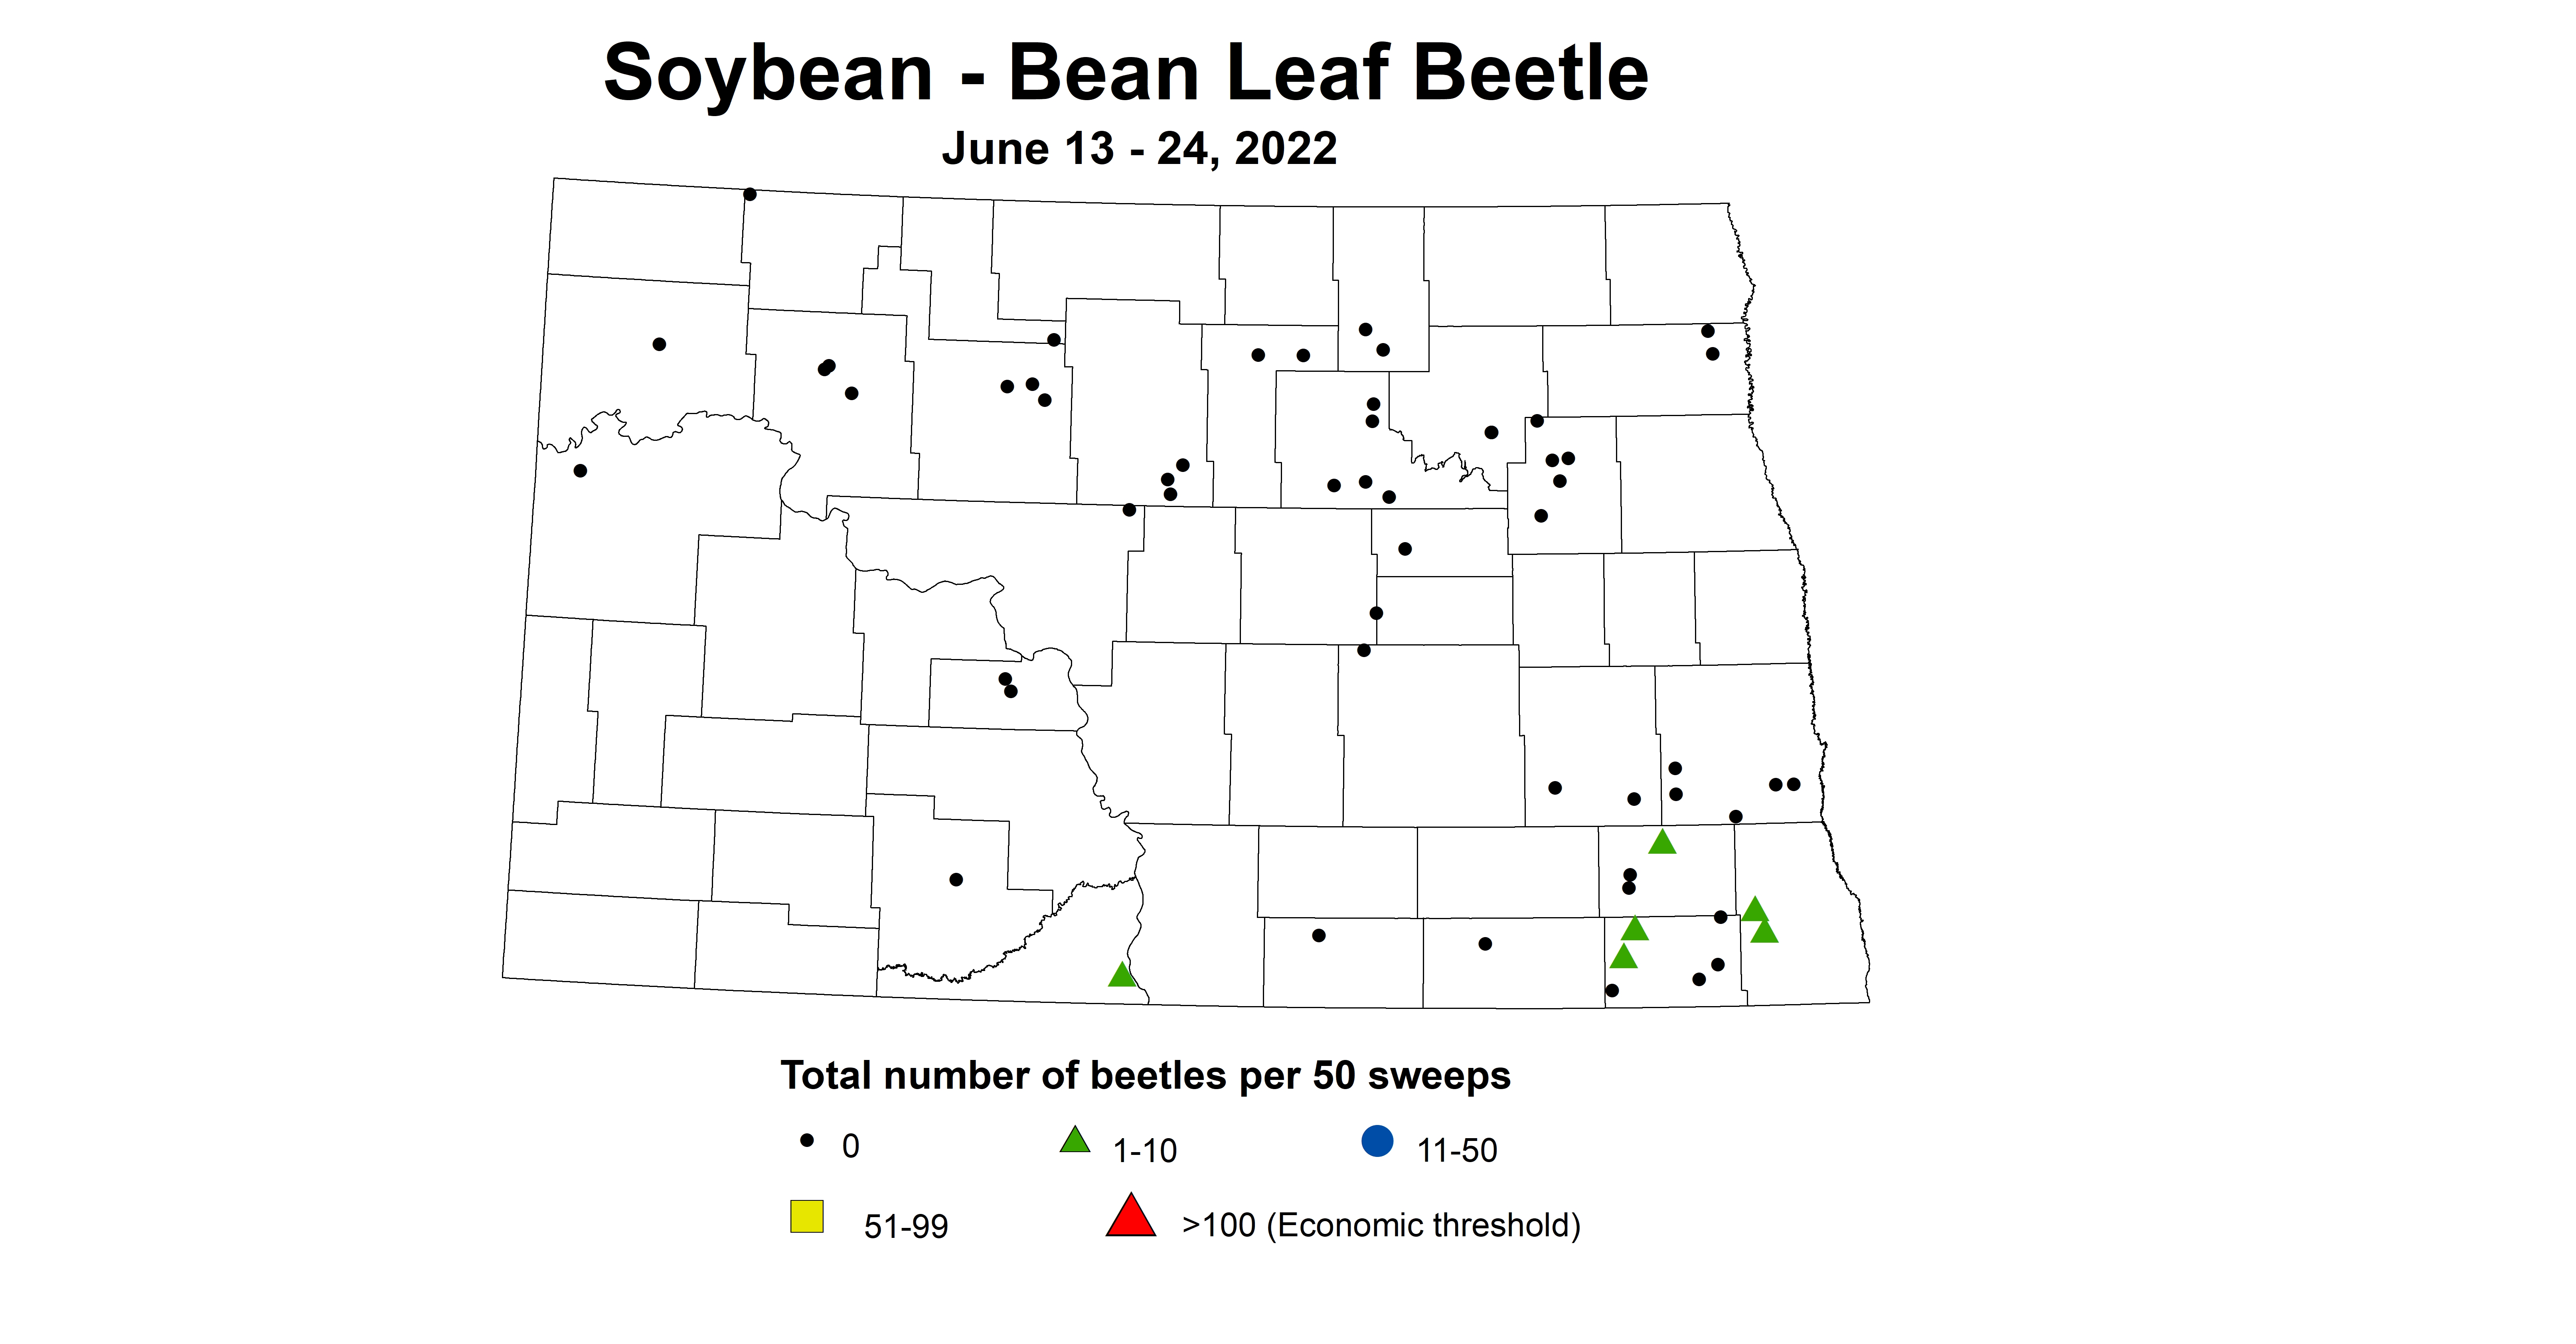 ND IPM map of soybean total number of beetles per 50 sweeps June 13-24, 2022